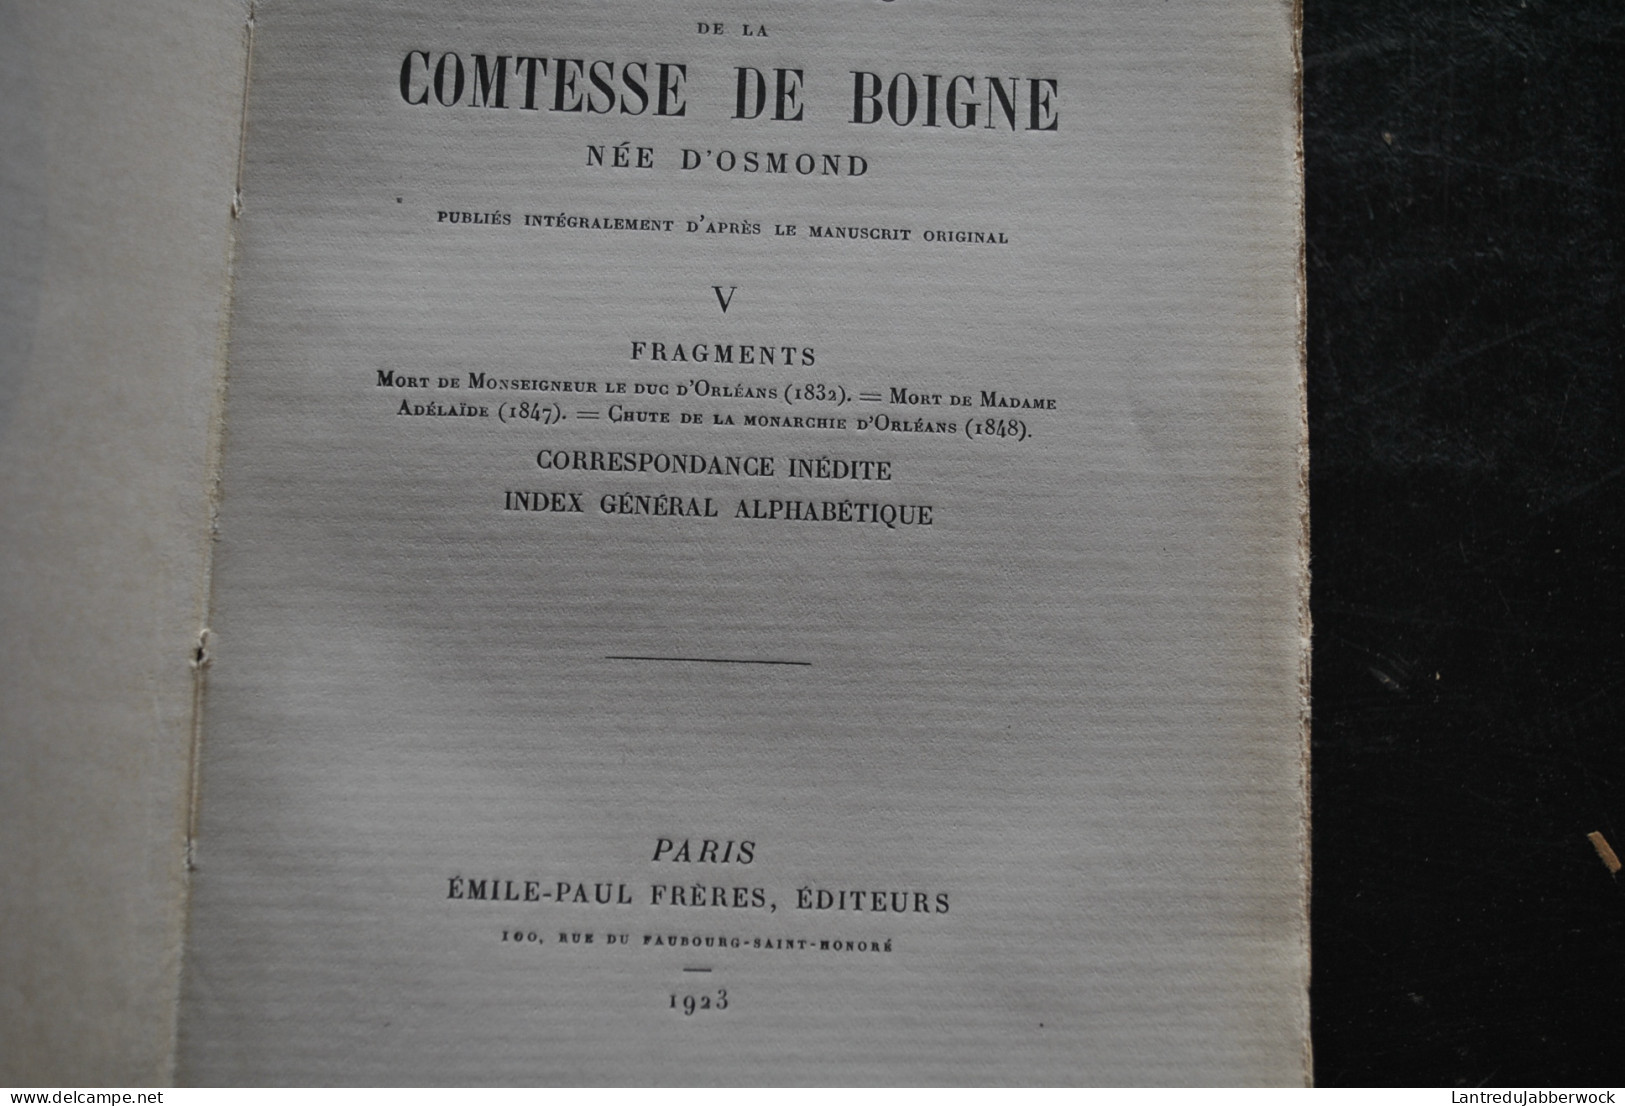 Mémoires de la Comtesse de Boigne née d'Osmond Récits d'une tante Emile-Paul Frères 1923 1925 Complet en 5 tomes RARE 